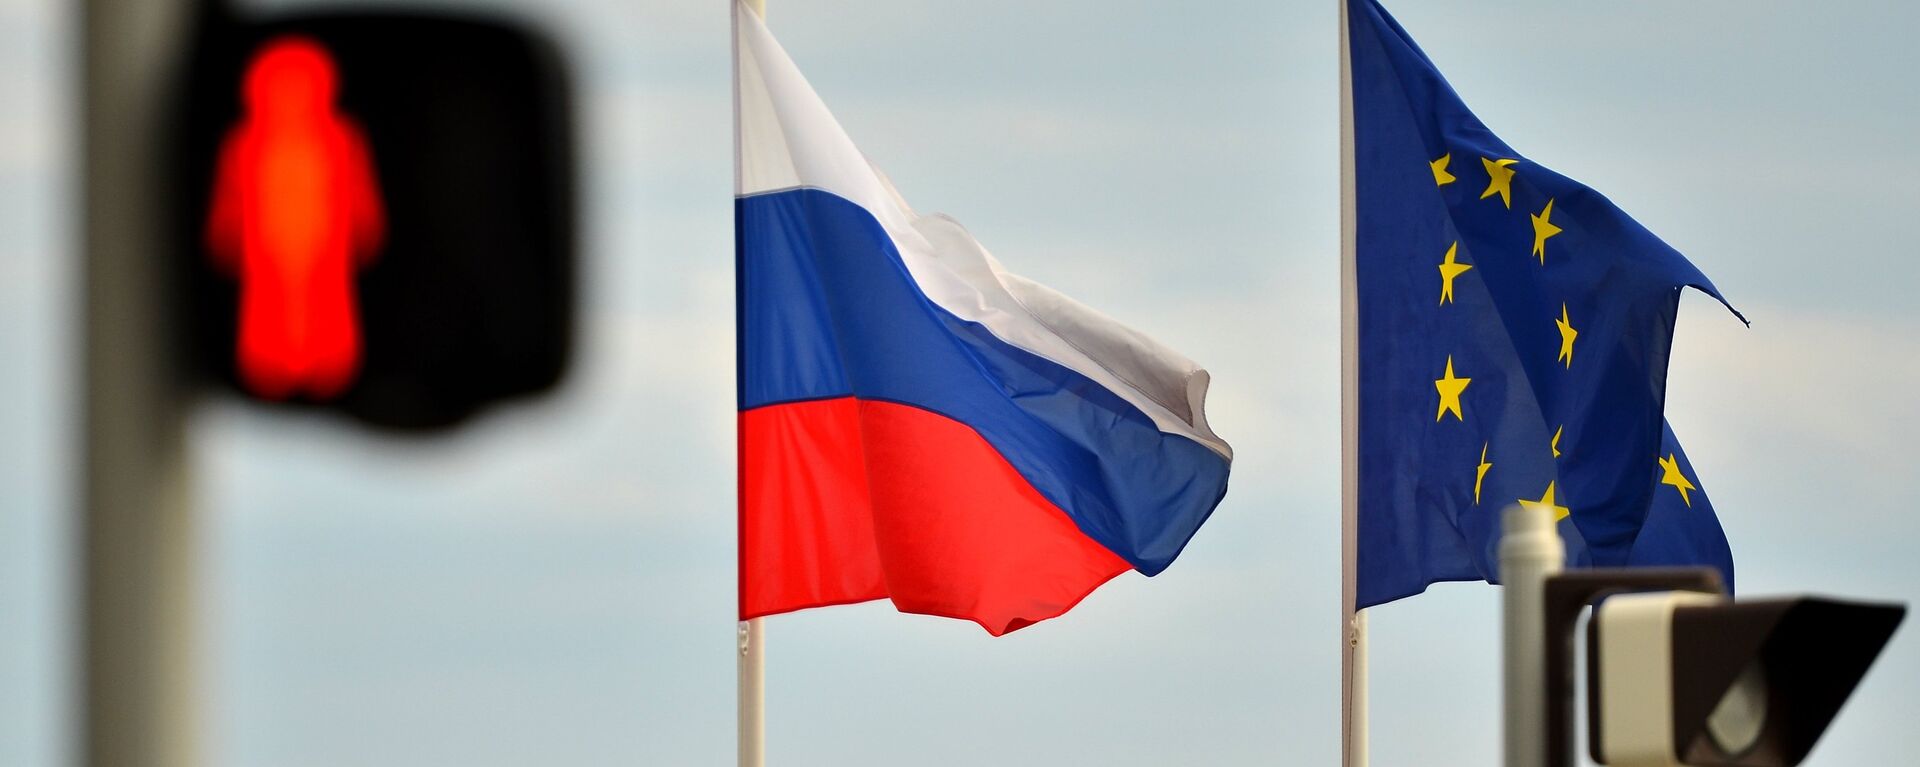 Banderas de Rusia y la UE - Sputnik Mundo, 1920, 22.03.2021